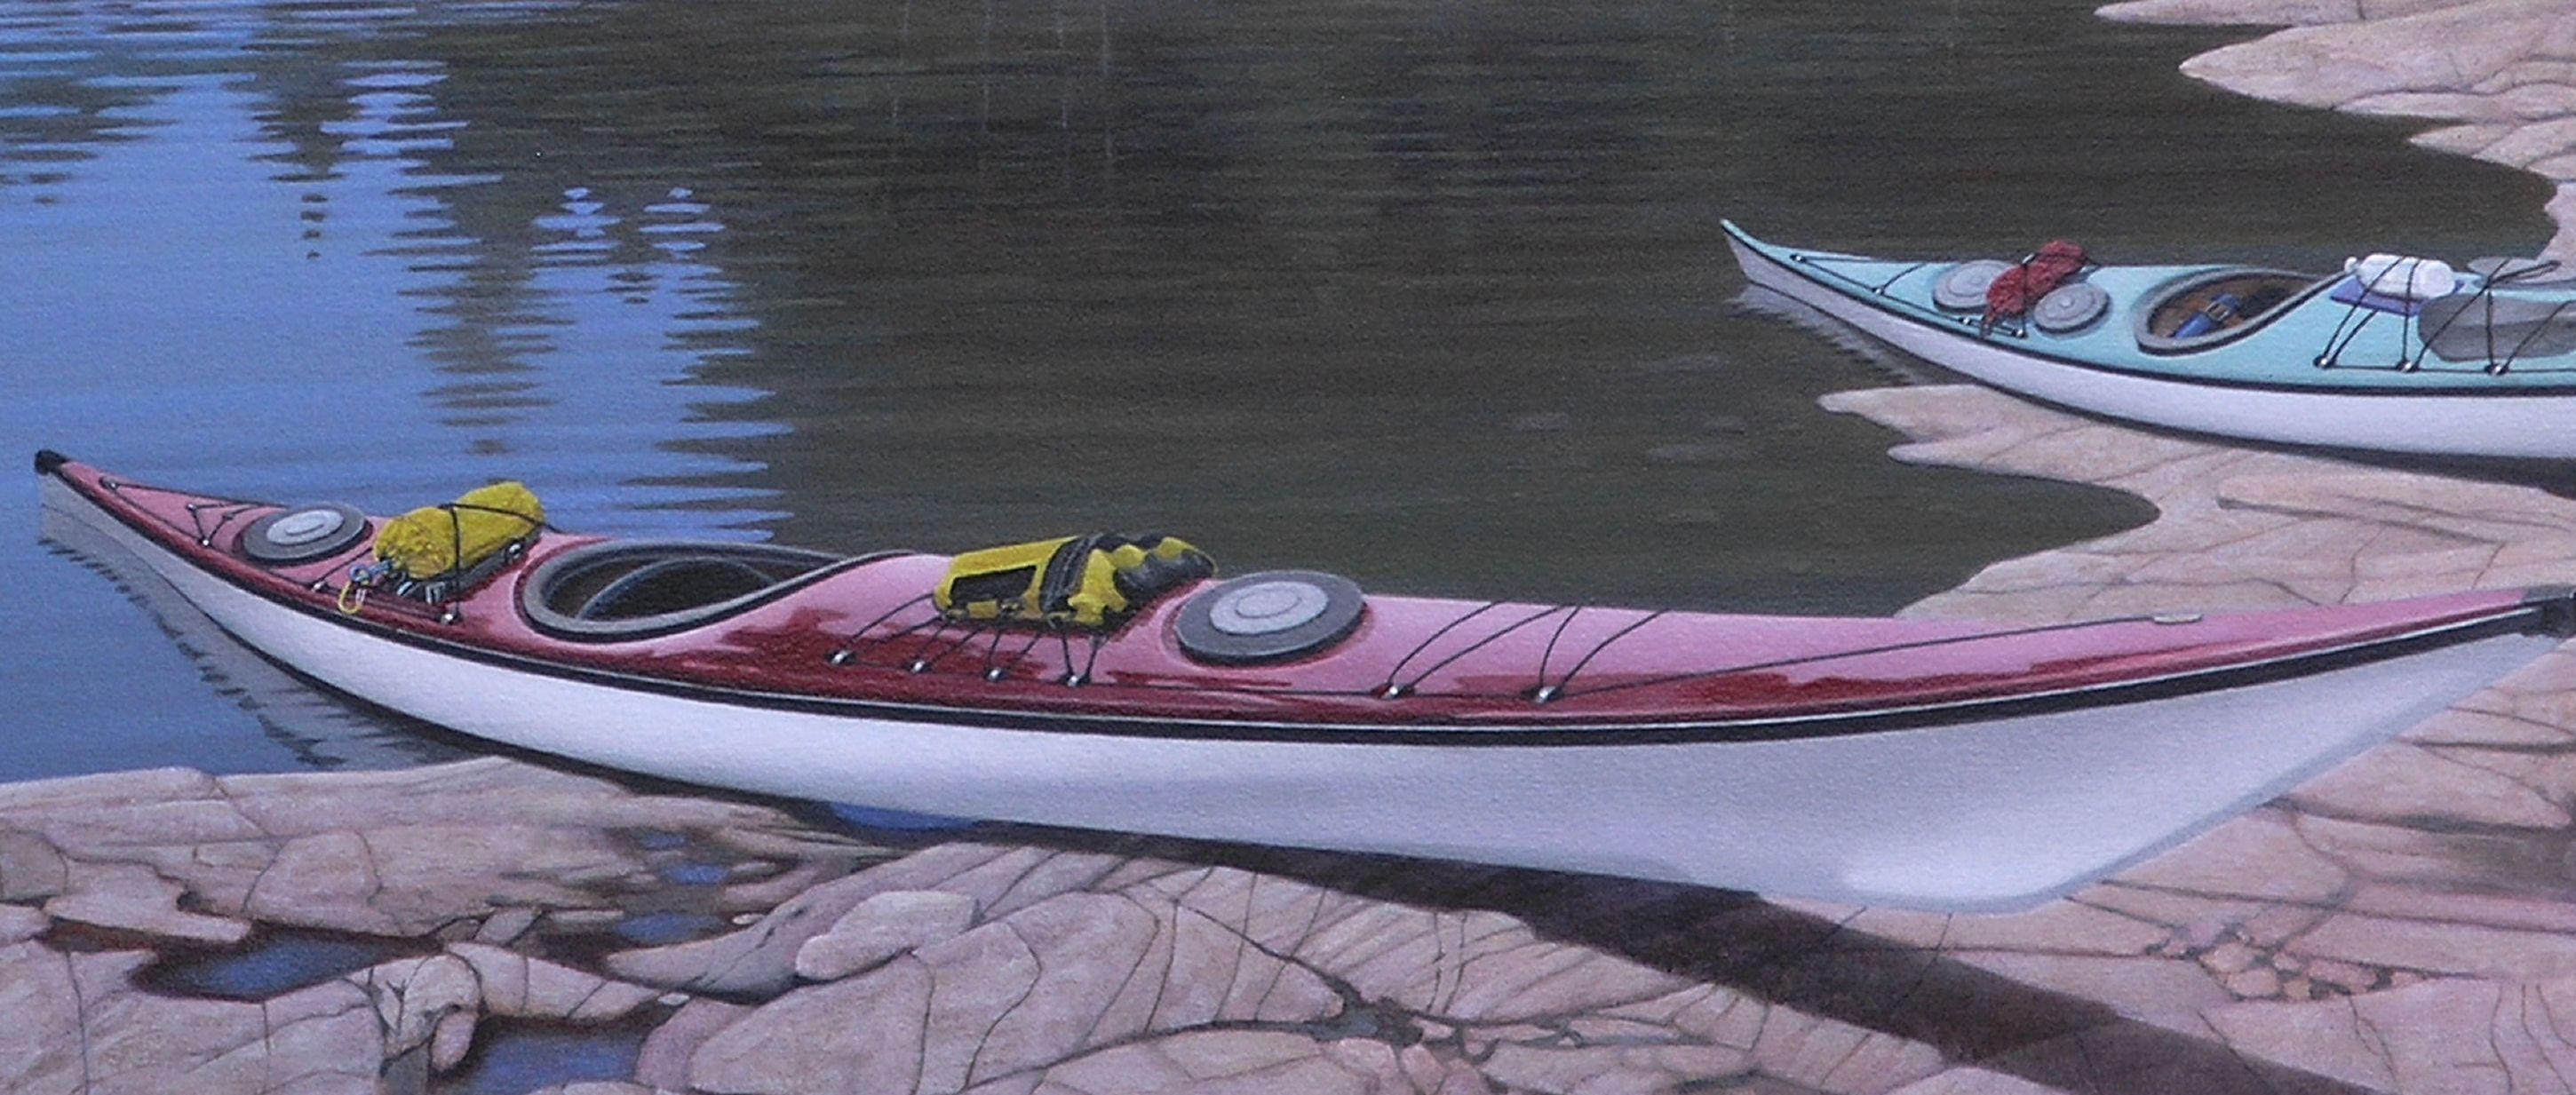 canvas kayaks